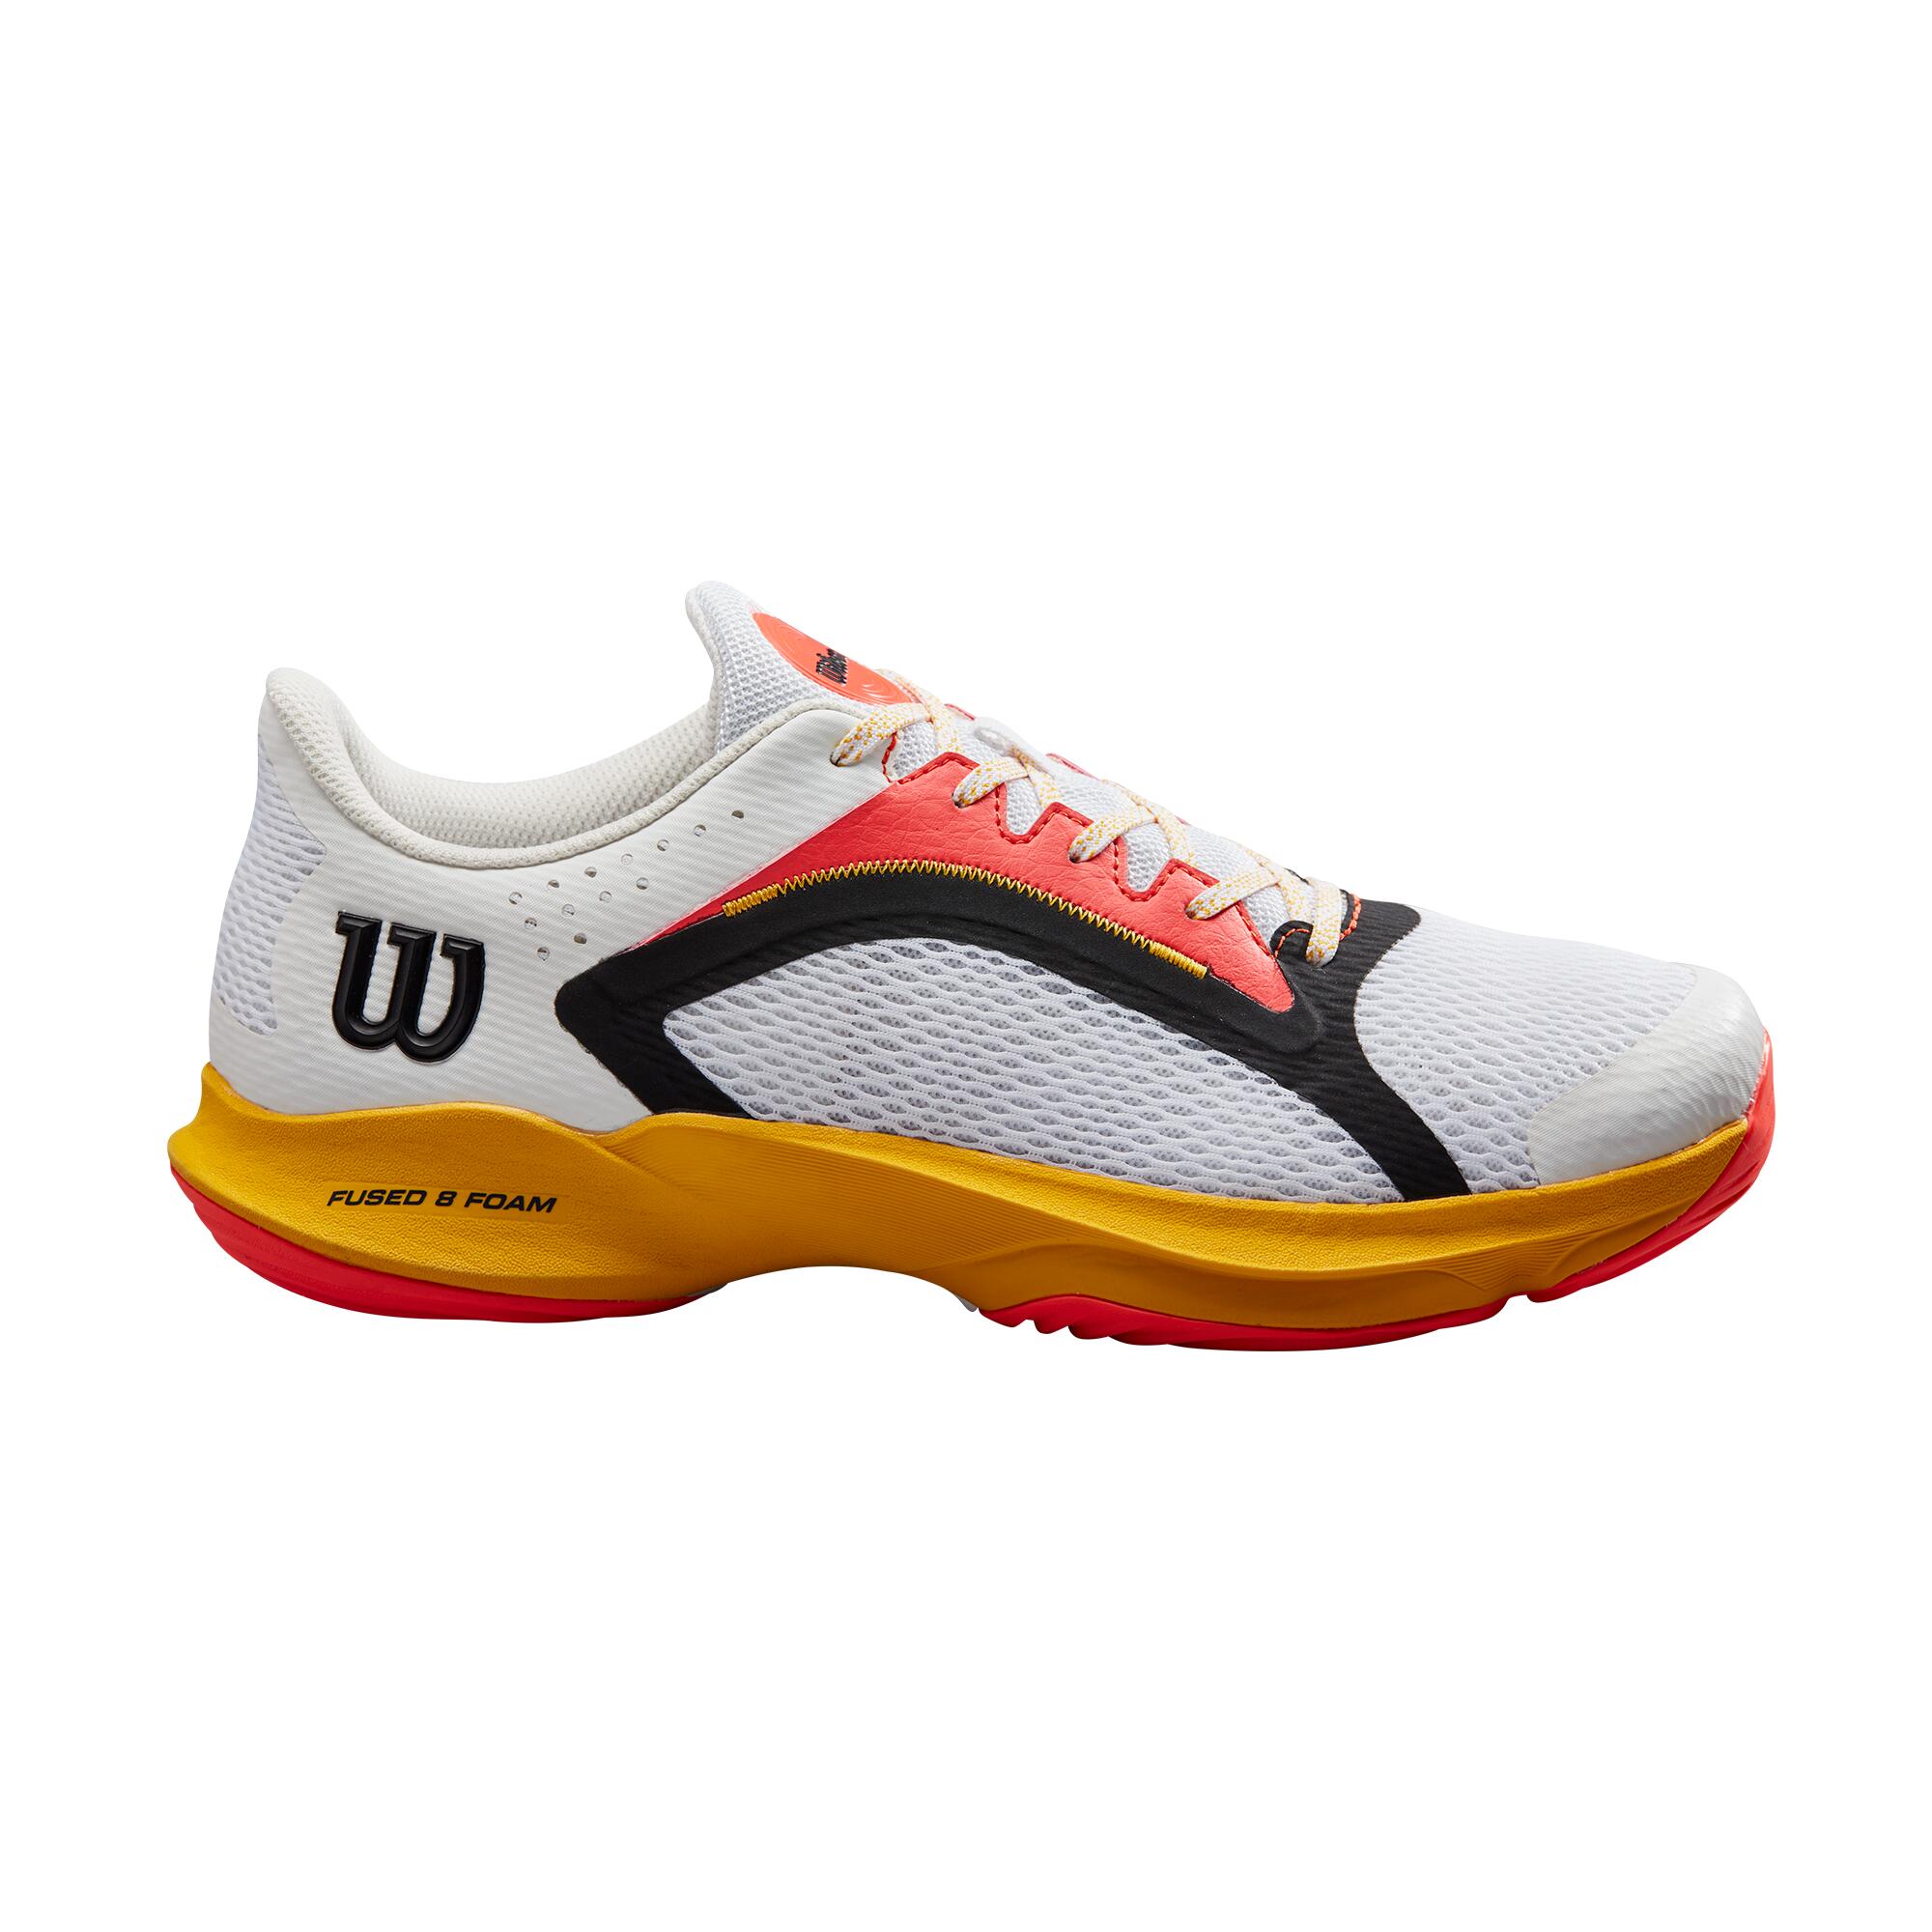 Wilson Hurakn 2.0 Men's Padel Tennis Sports Shoe Trainer - White/Old Gold/Fiery 2/4